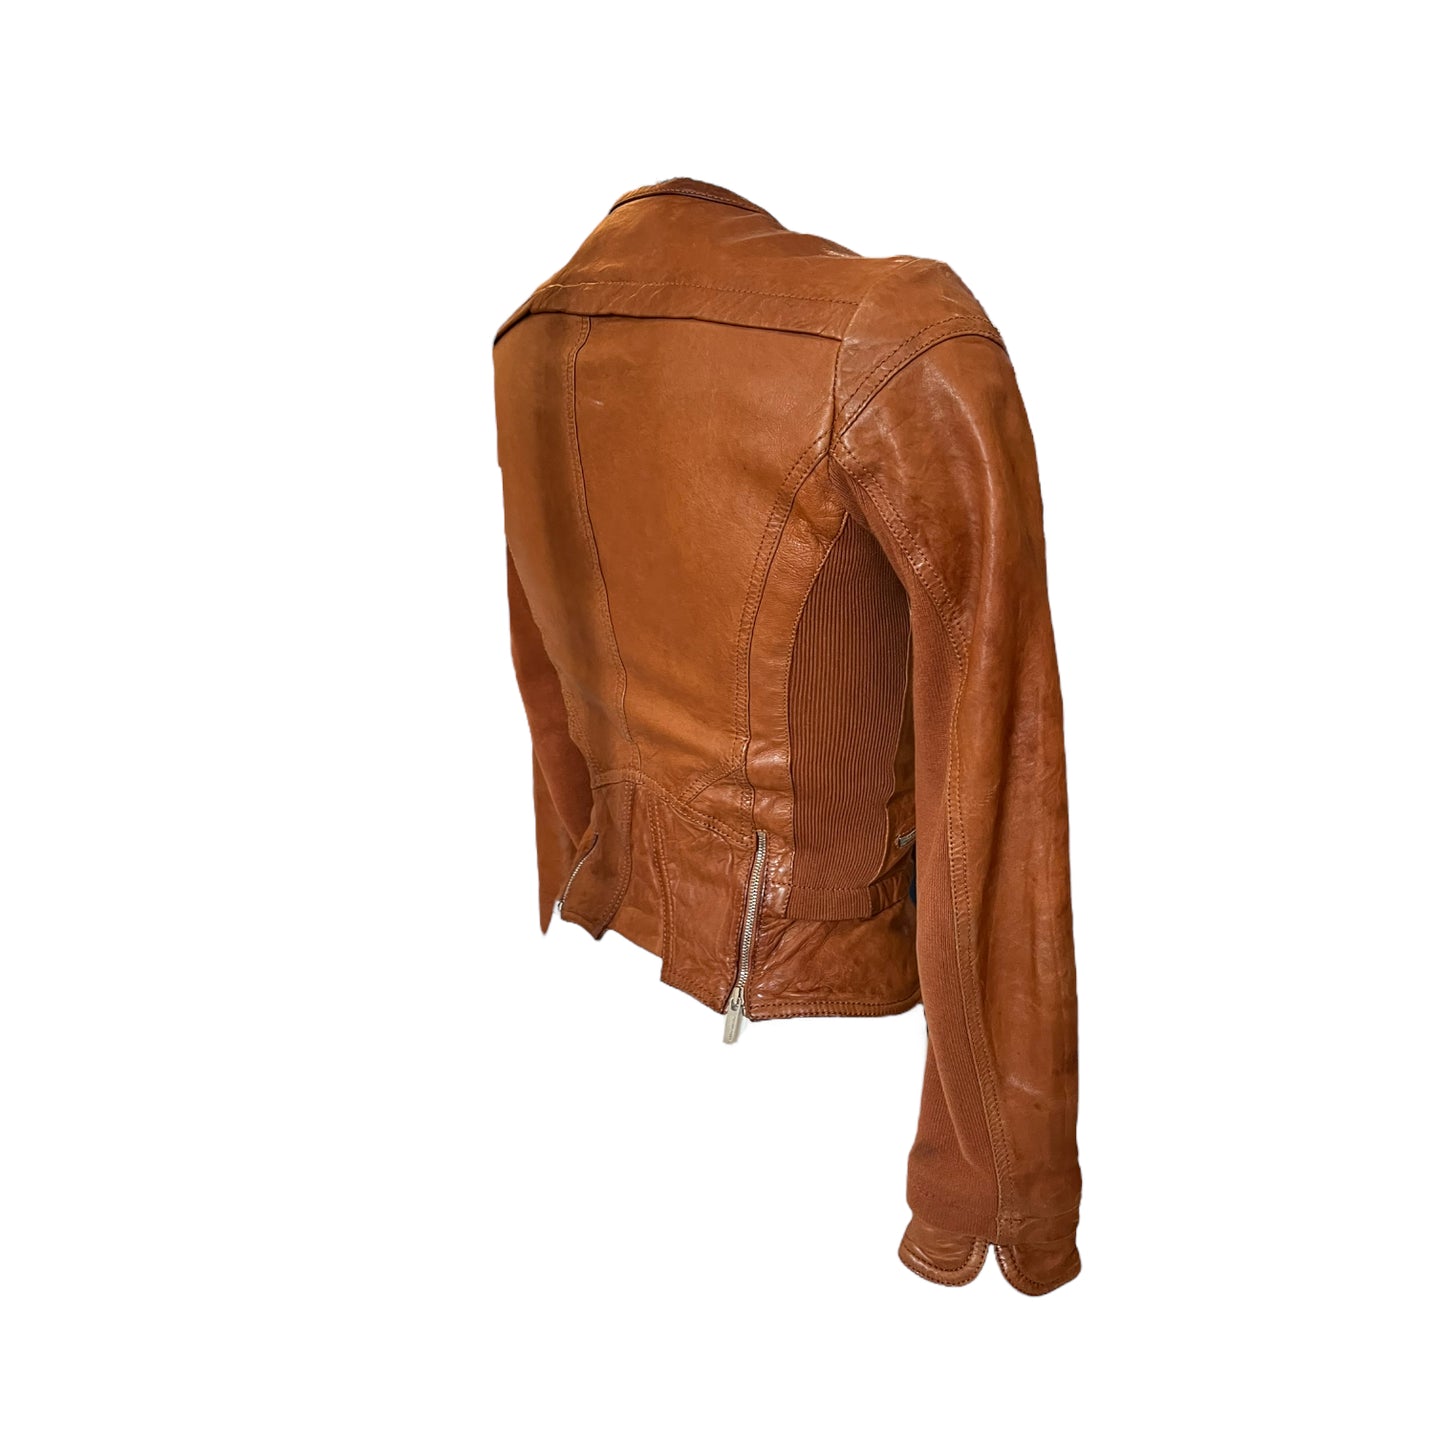 Karen Millen Tan Leather Jacket